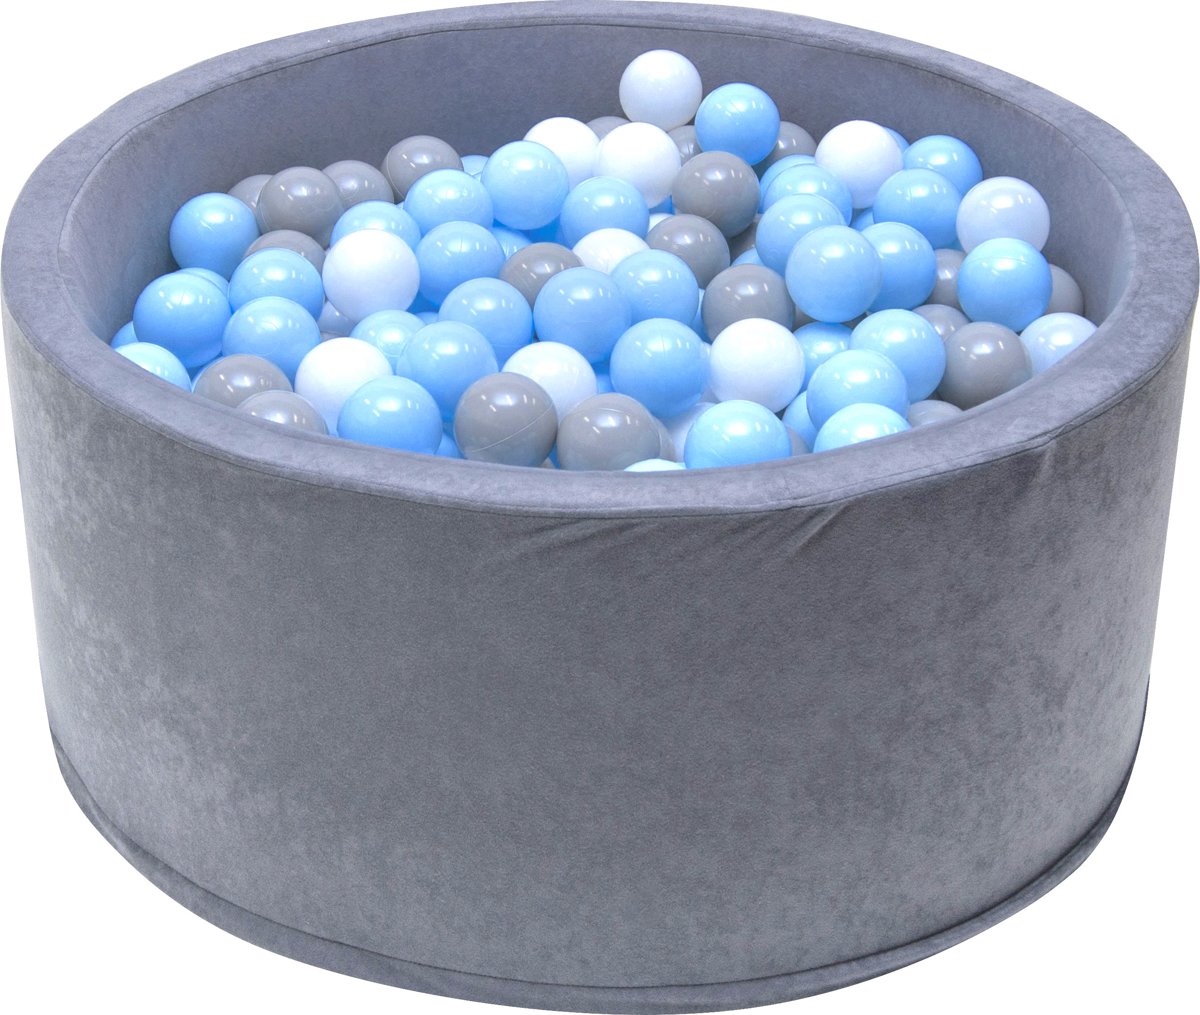 Ballenbak - stevige grijze ballenbad - 90 x 40 cm - 200 ballen Ø 7 cm - blauw, wit, grijs